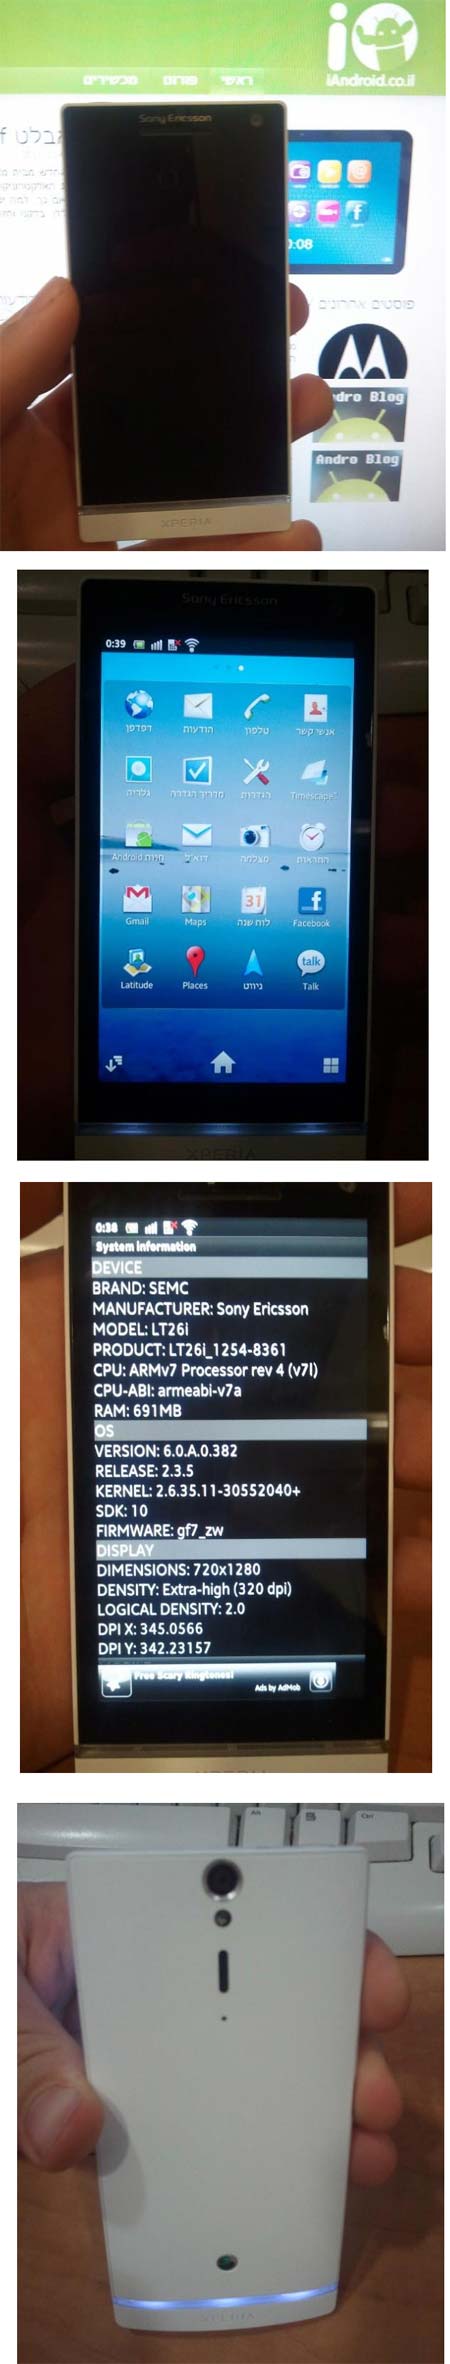 Sony Ericsson Xperia Nozomi LT26i - ещё один гуглофон на подходе